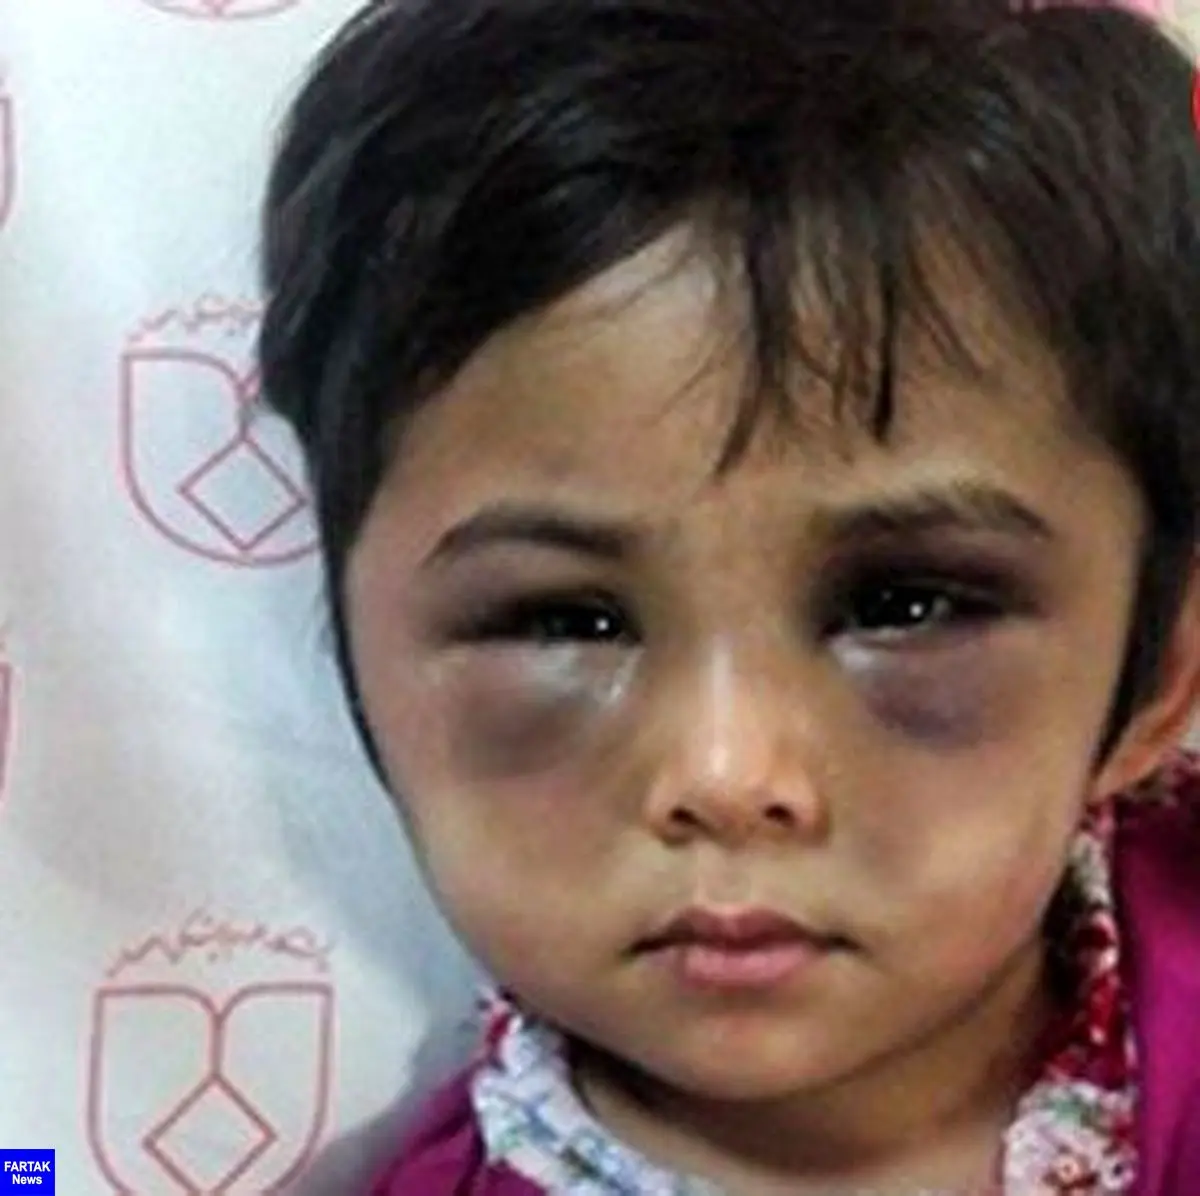  چهره کبود شده دختر اصفهانی / این ماجرا اشک همه را در می آورد